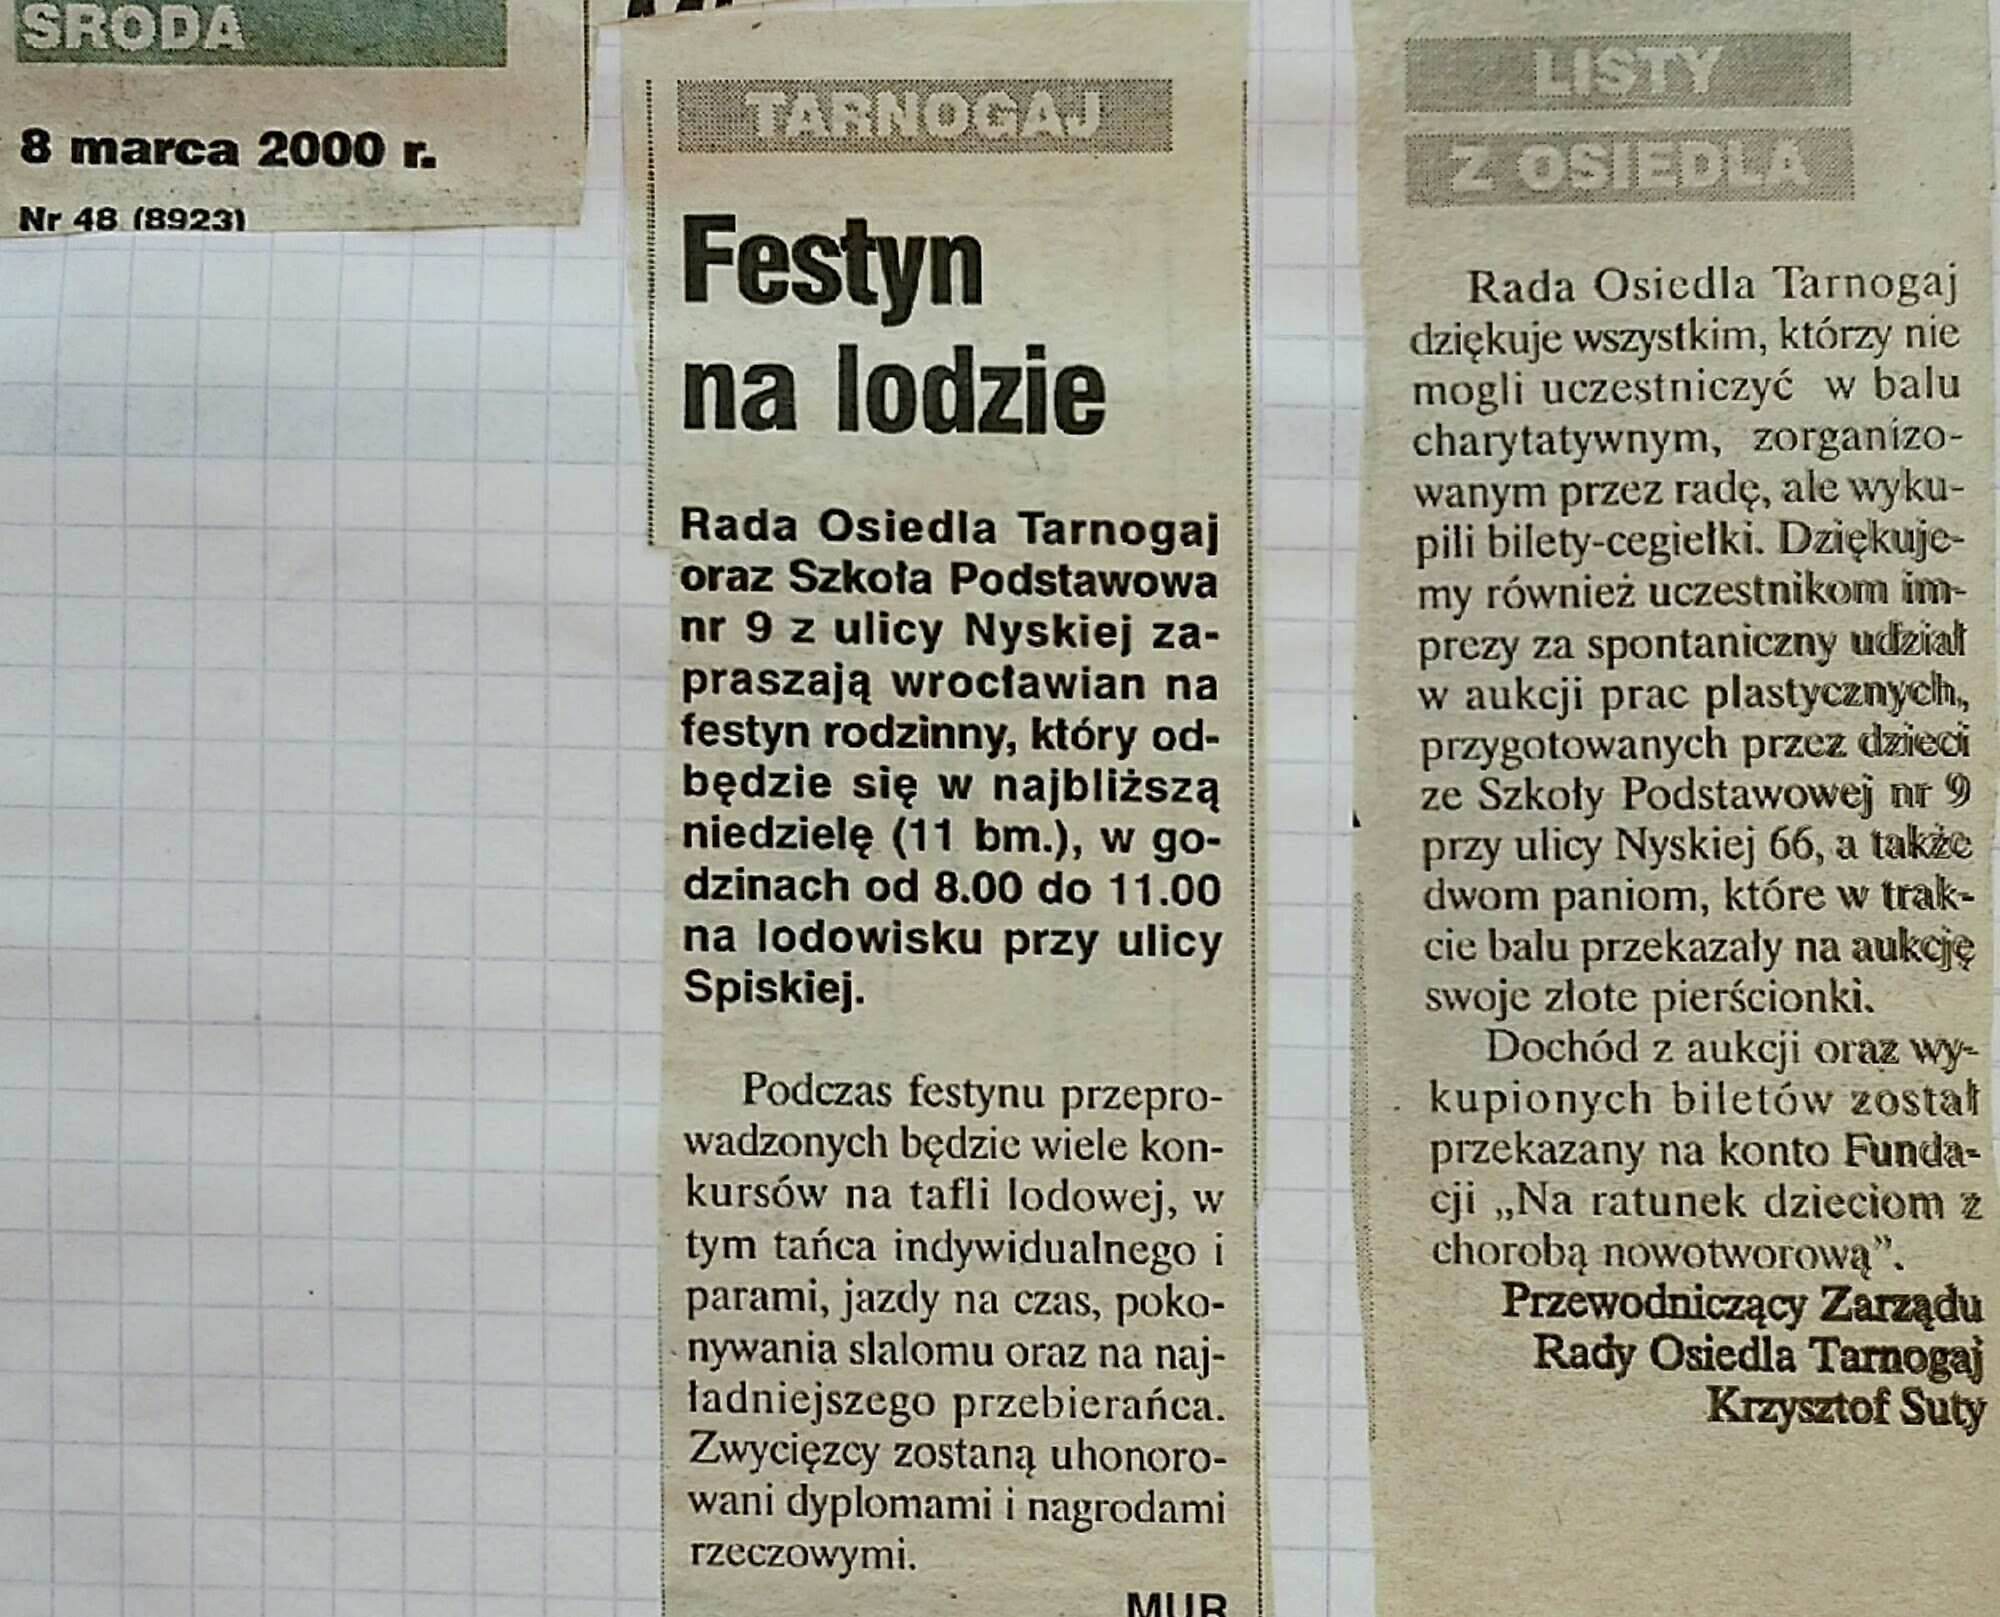 2000 Marzec 8 Wieczór Wrocławski